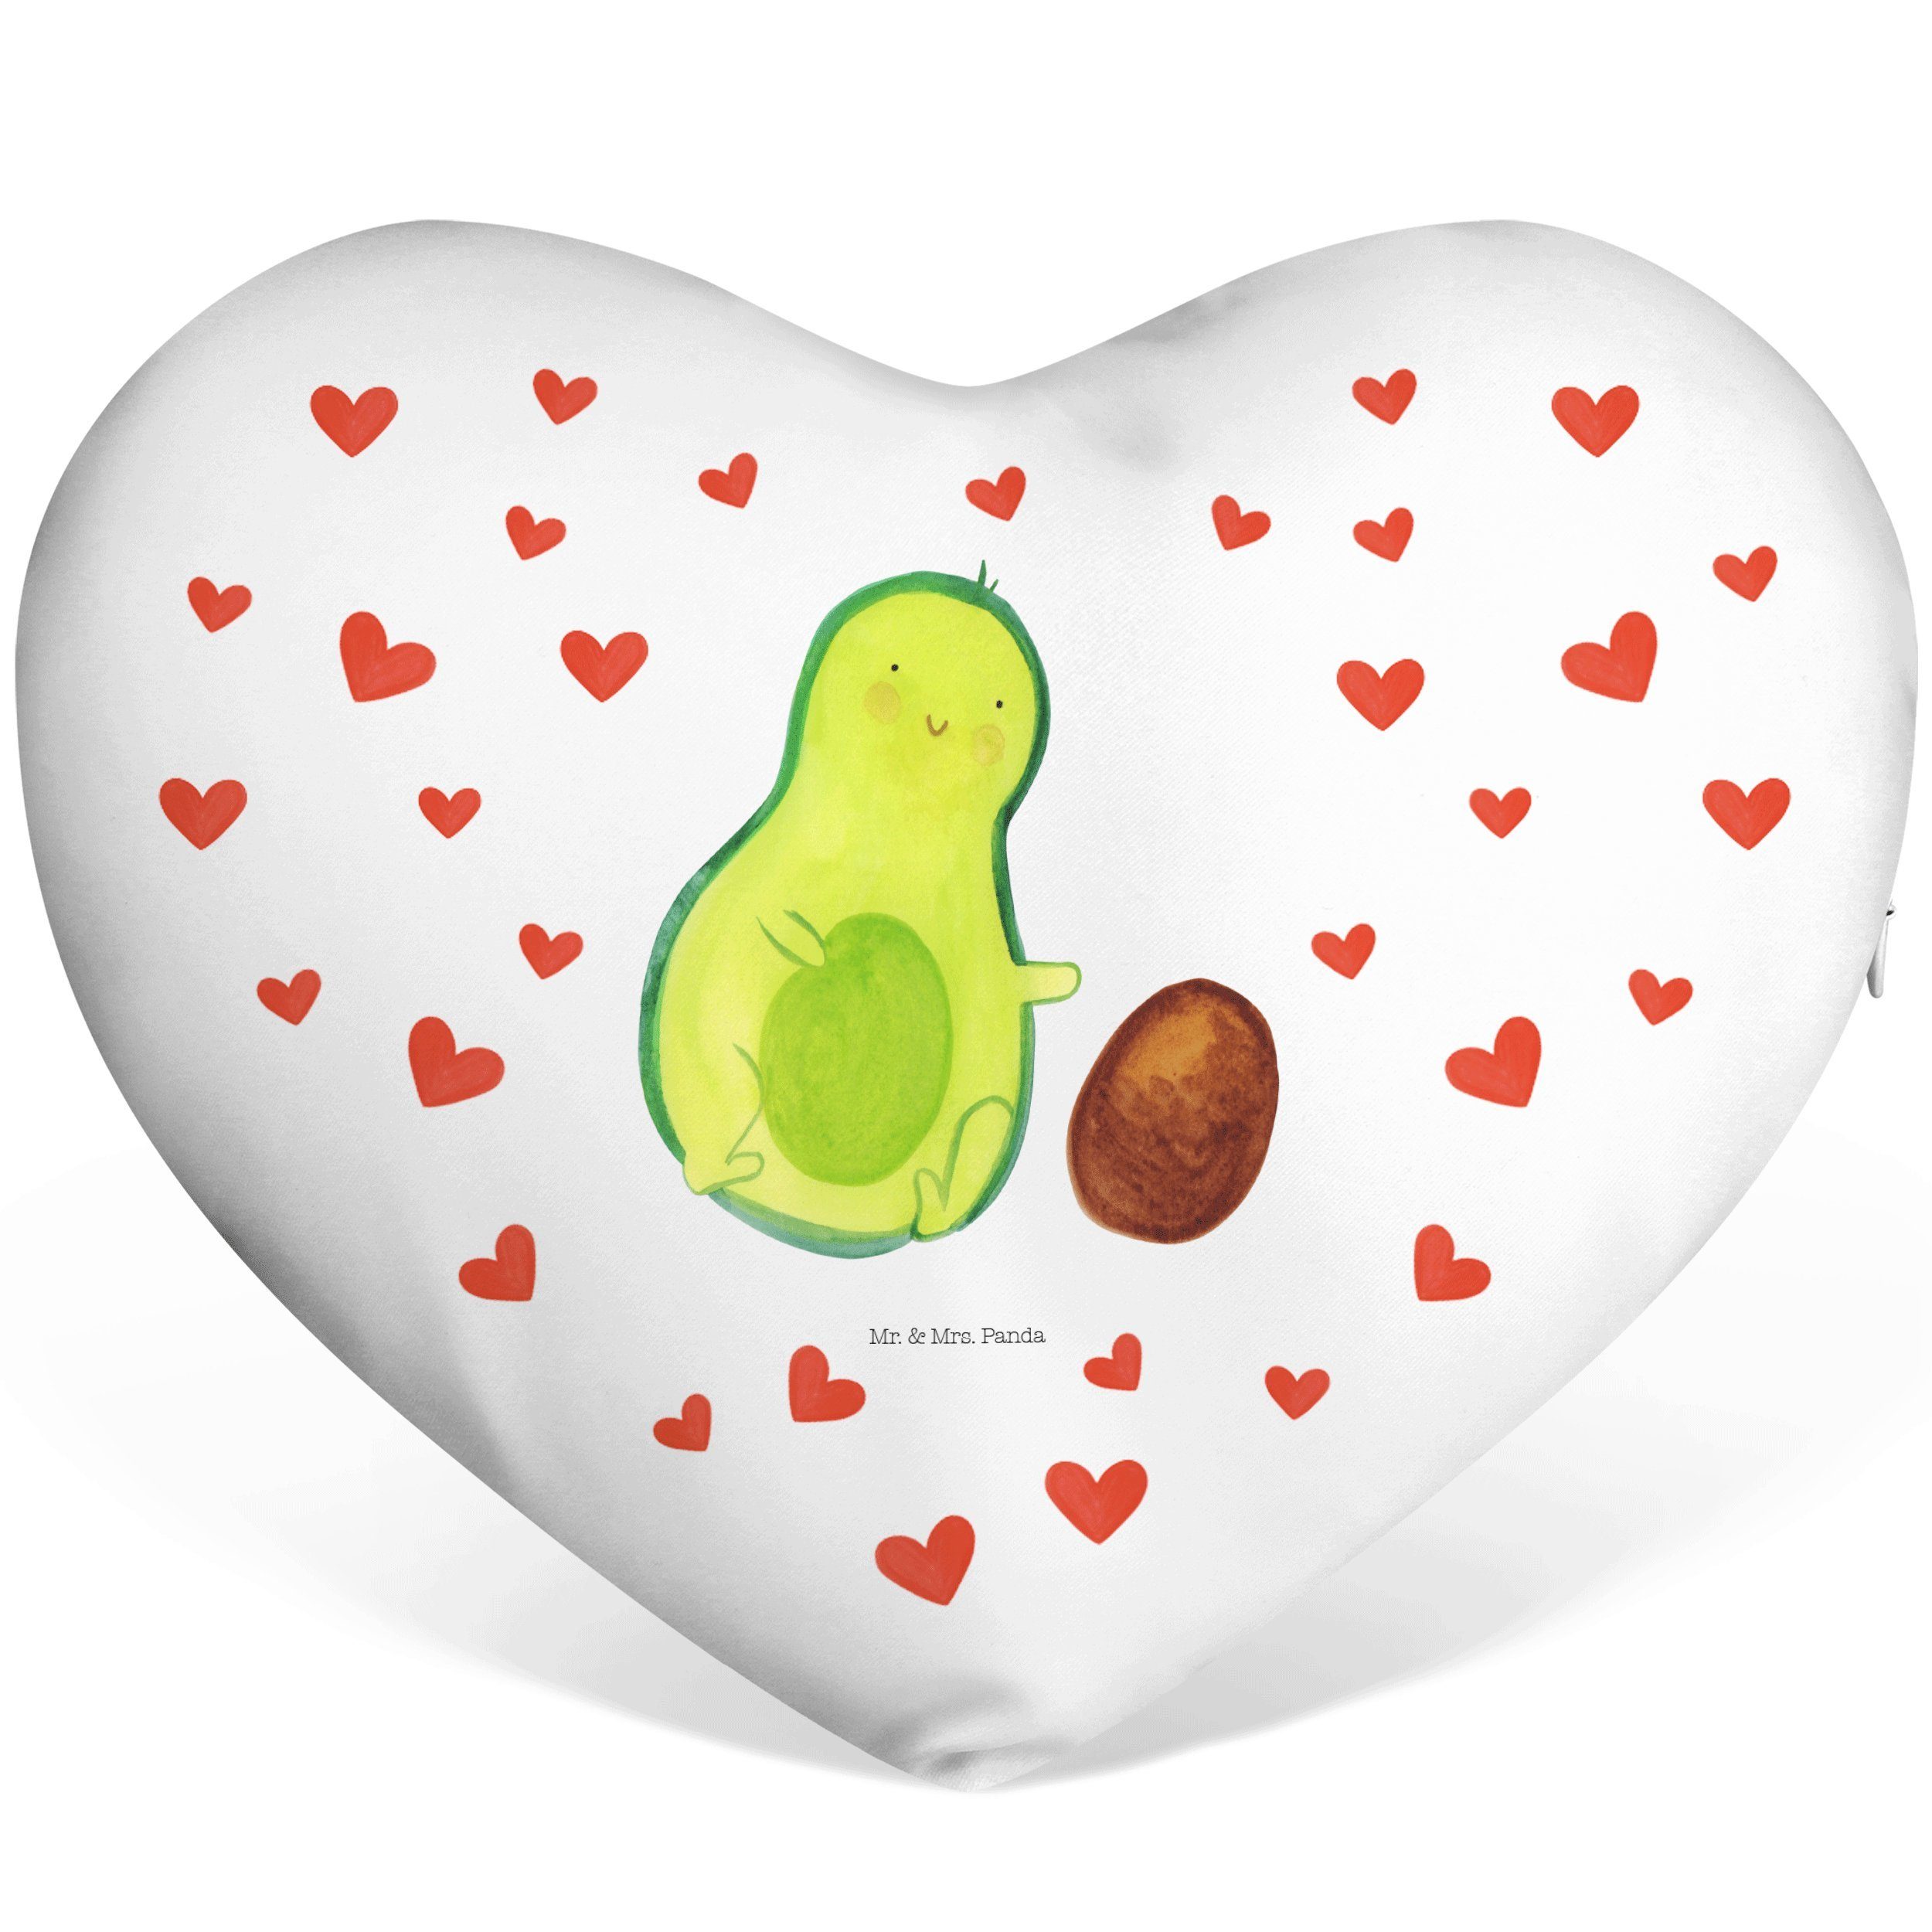 Mr. & Mrs. Panda Dekokissen Avocado rollt Kern - Weiß - Geschenk, erstes Kind, Herz, Kissen, Herz